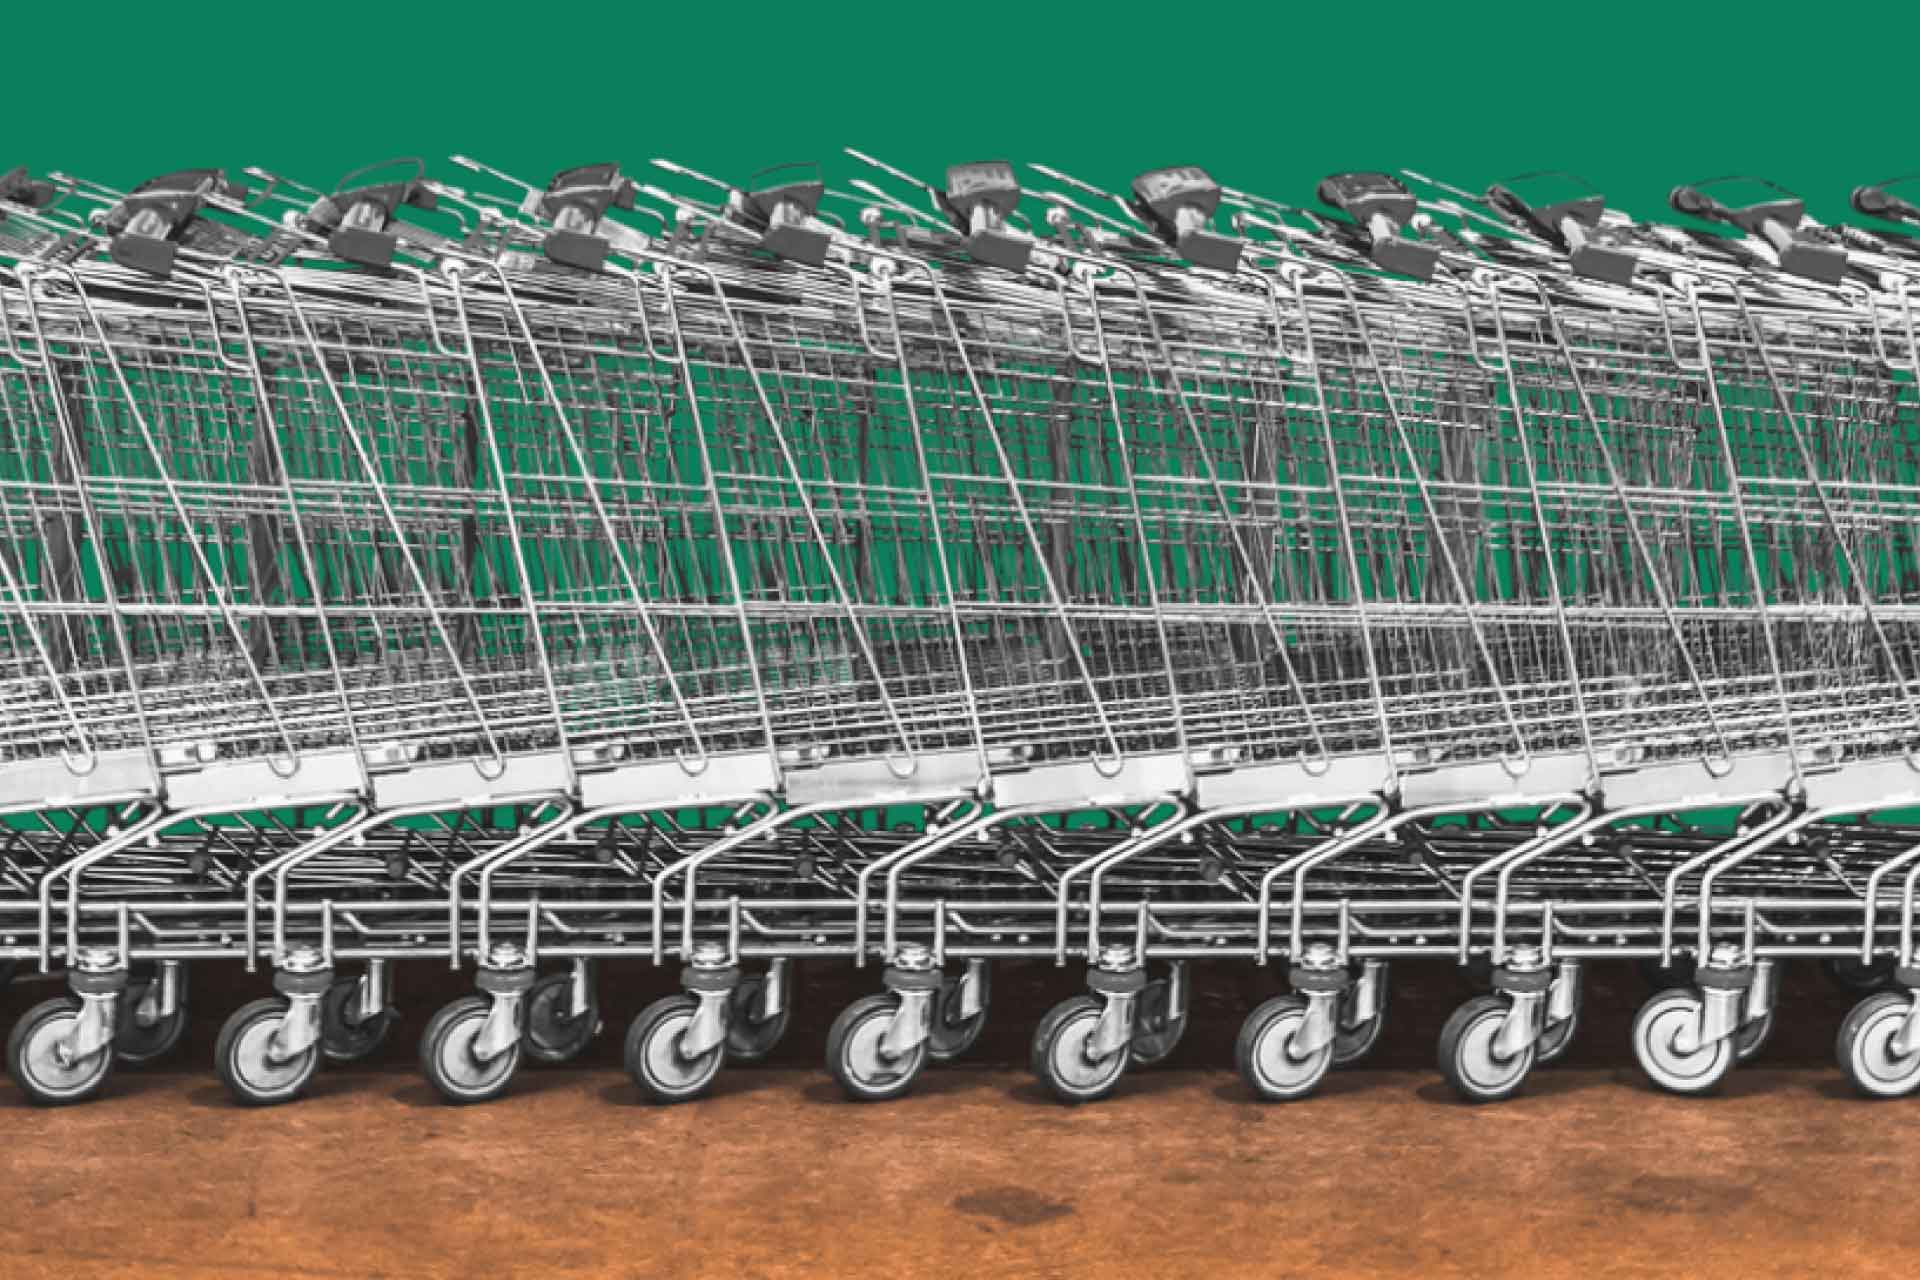 Gatekeeper shopping carts